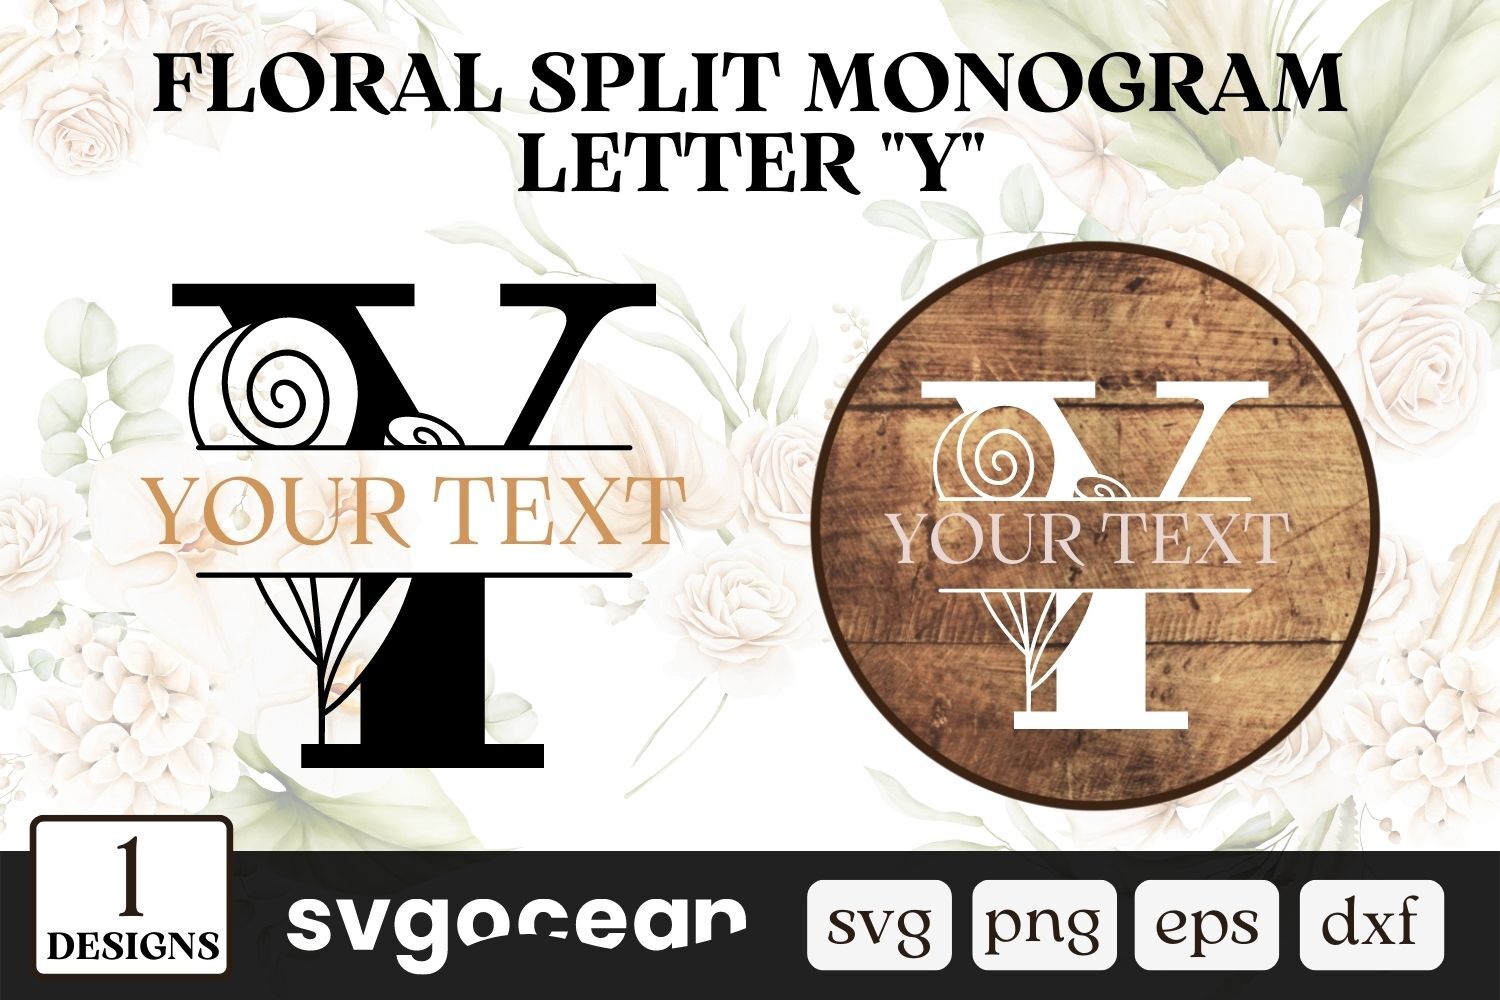 Flower Split Monogram Letter Y SVG vector for instant download - Svg Ocean  — svgocean